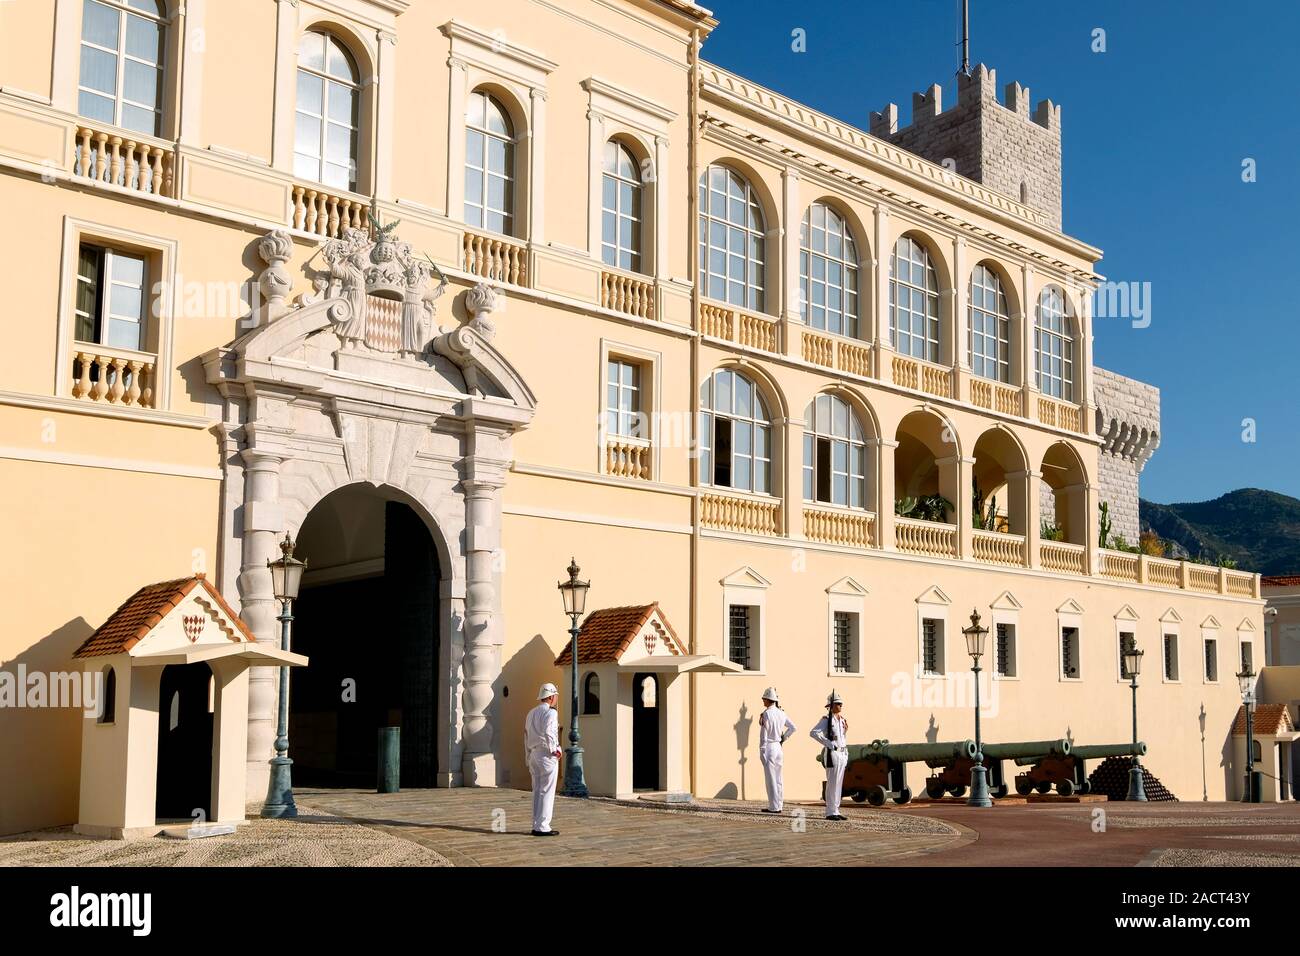 El cambio de guardia, el Palacio del Príncipe de Mónaco, Monaco-Ville, Montecarlo, Principado de Mónaco, Europa Foto de stock